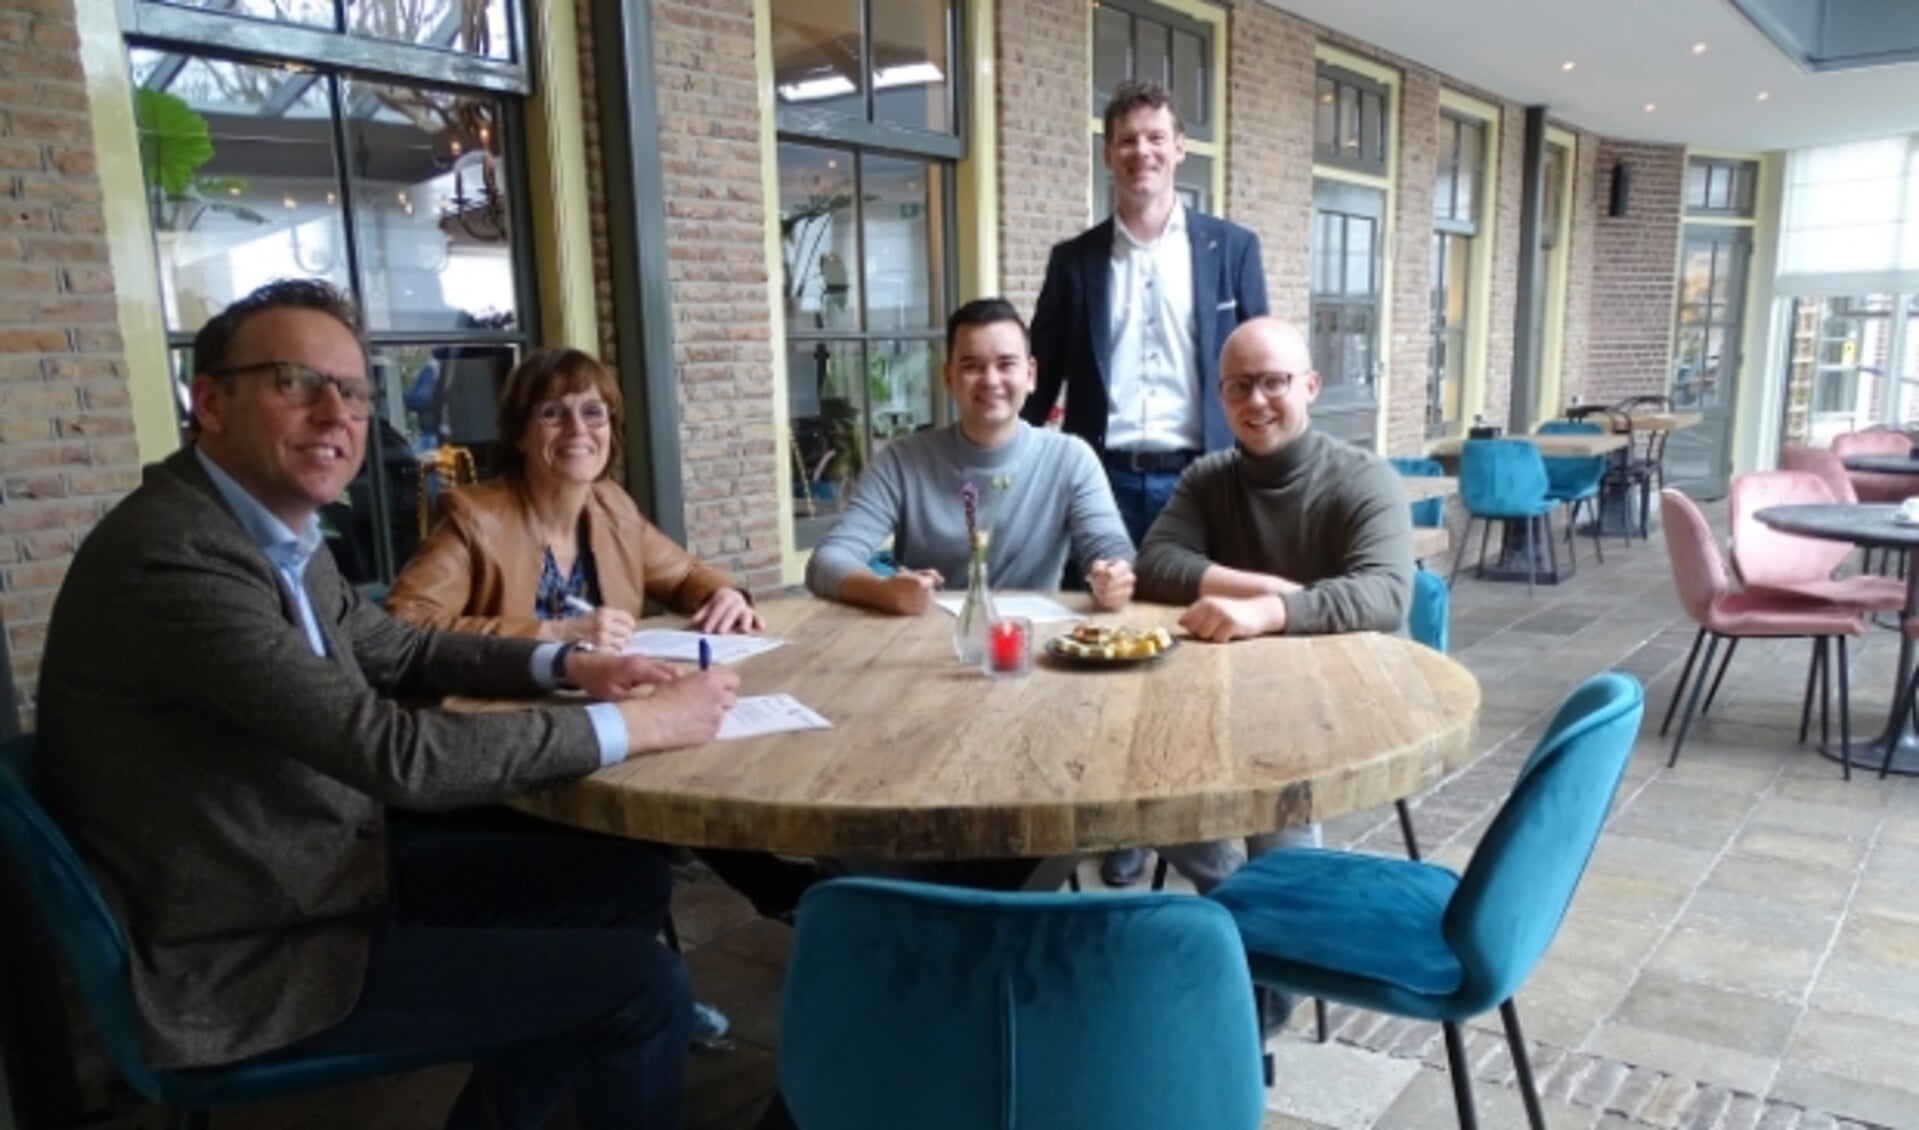 De overeenkomst getekend: vlnr. Erik Schoonderwoerd, Joyce Jacobs, Jamie de Jong, Jeroen Kenbeek en Don Janmaat.